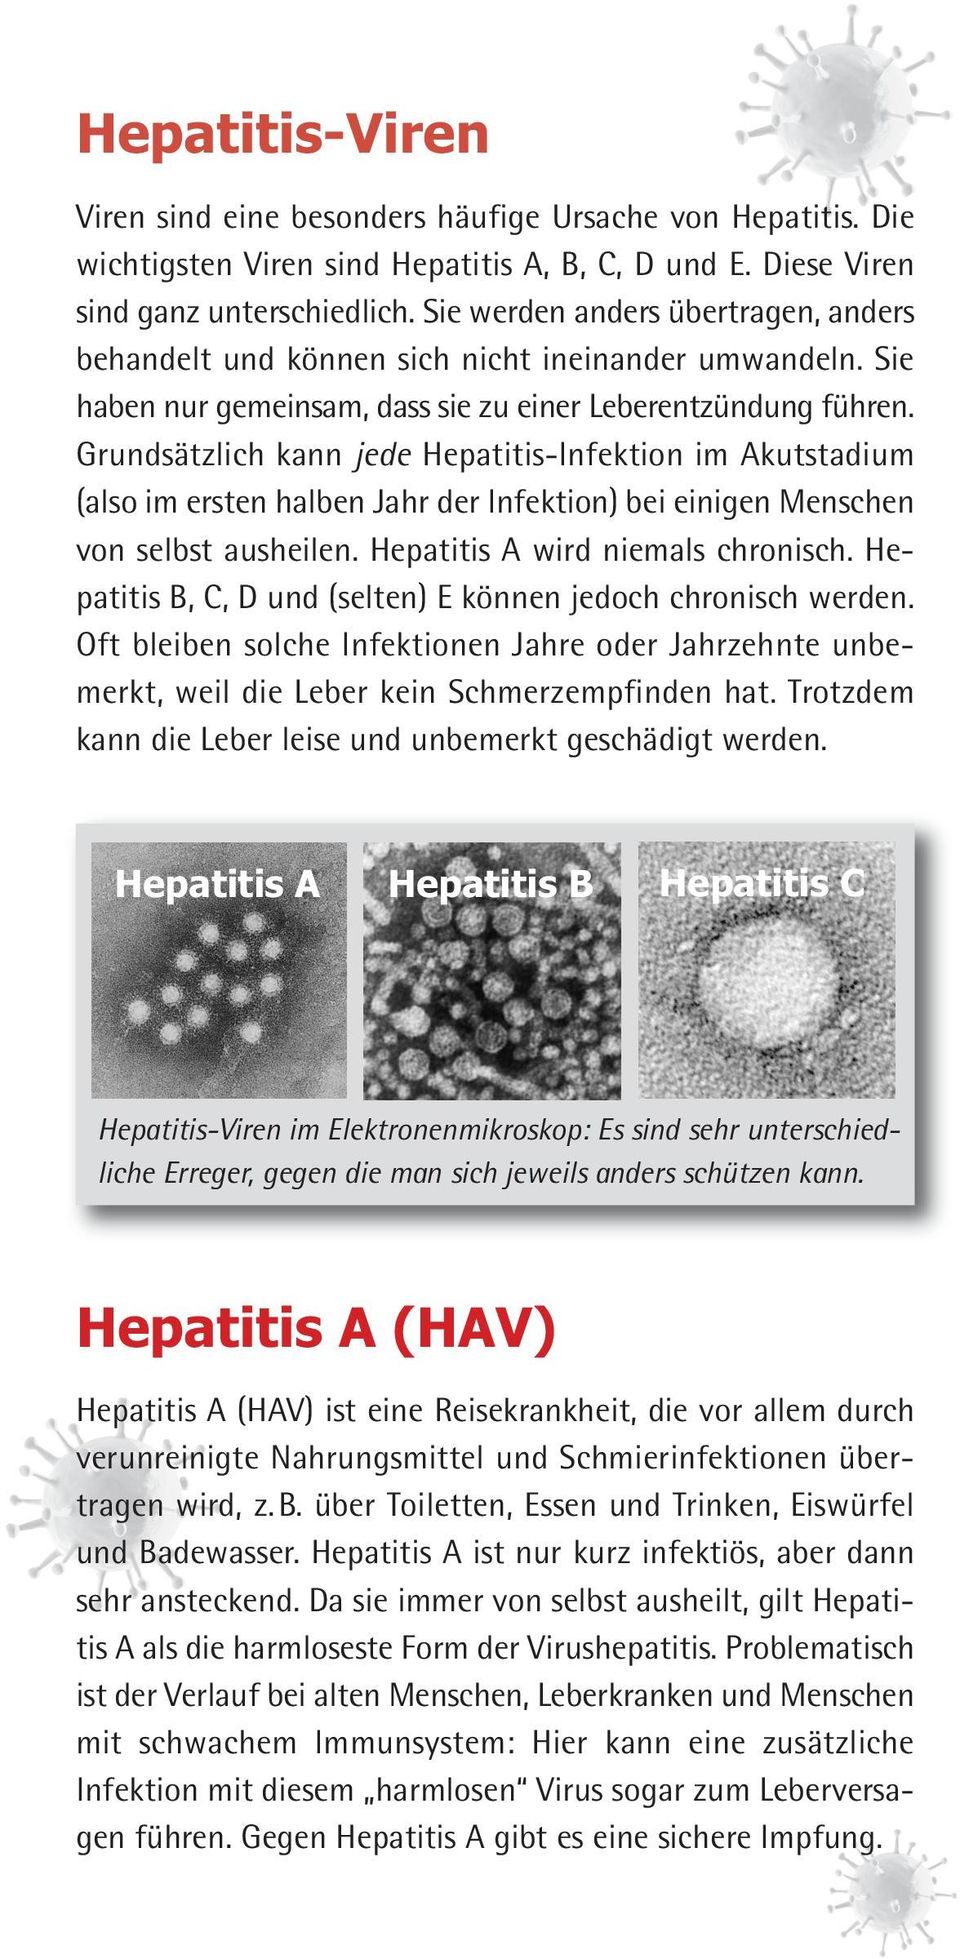 Grundsätzlich kann jede Hepatitis-Infektion im Akutstadium (also im ersten halben Jahr der Infektion) bei einigen Menschen von selbst ausheilen. Hepatitis A wird niemals chronisch.